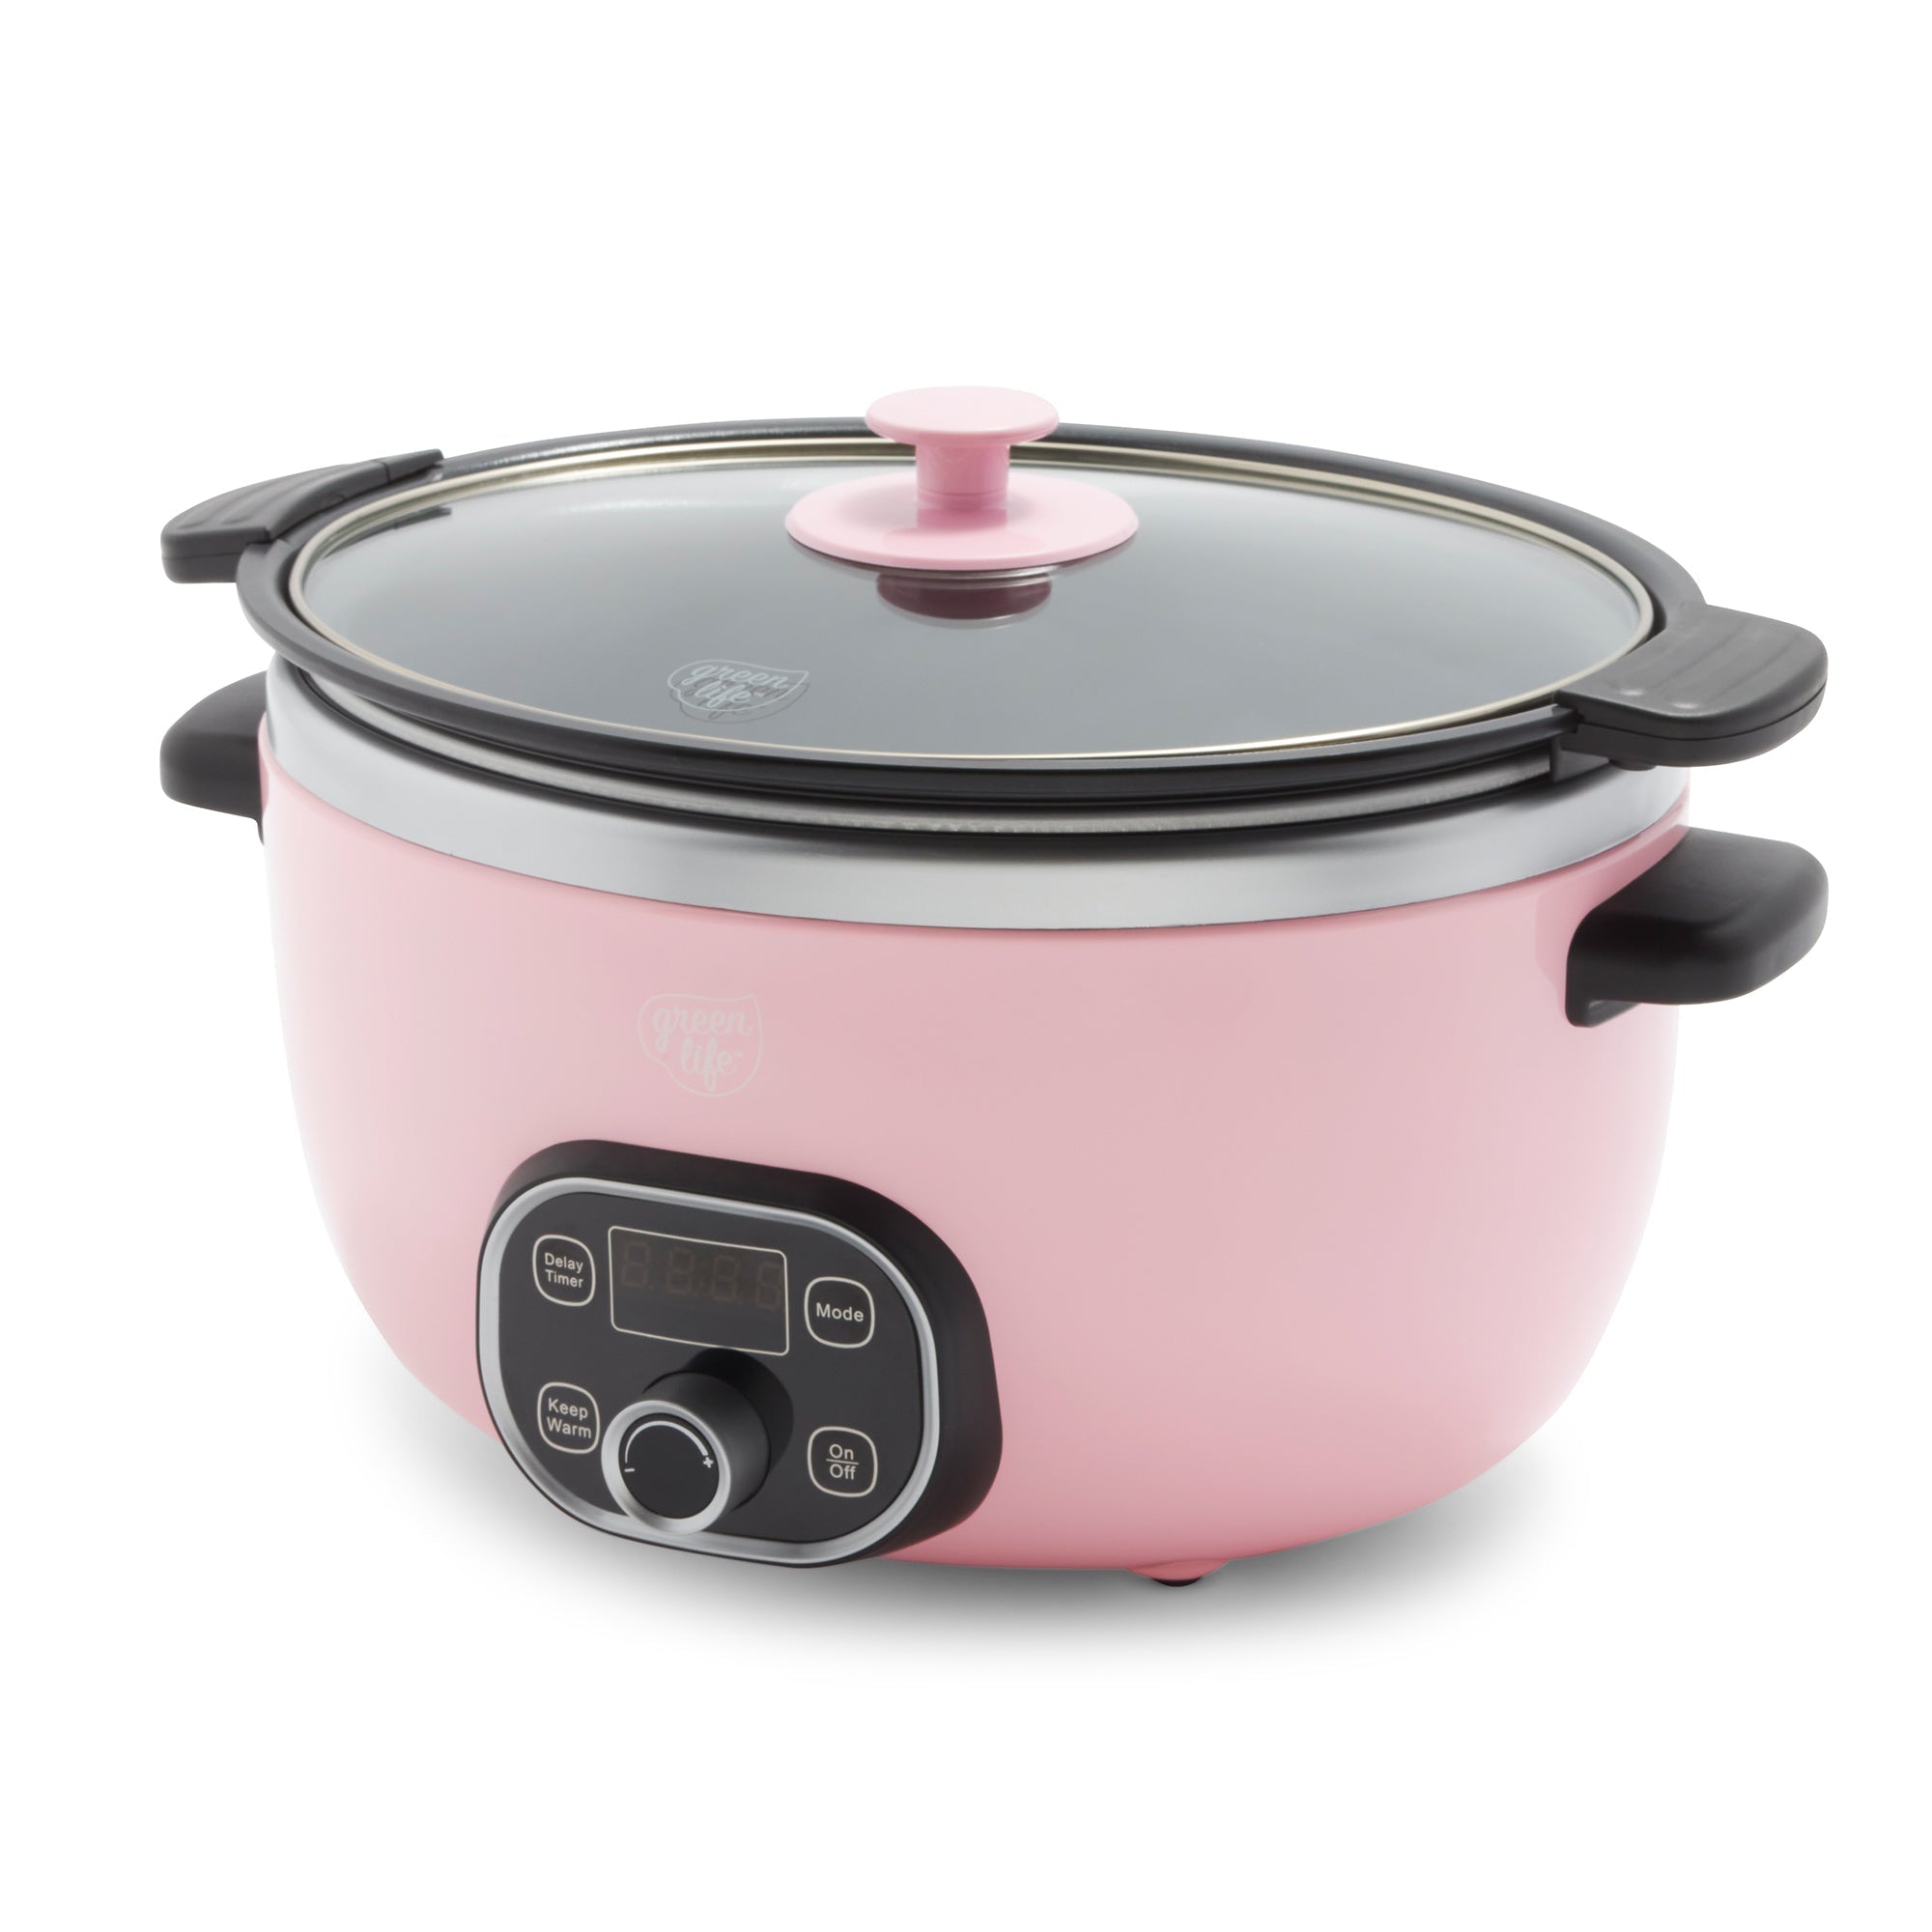 AR+COOK Multi Purpose Slow Cooker 1.5 Quart Capacity Pink Ceramic Crock Pot